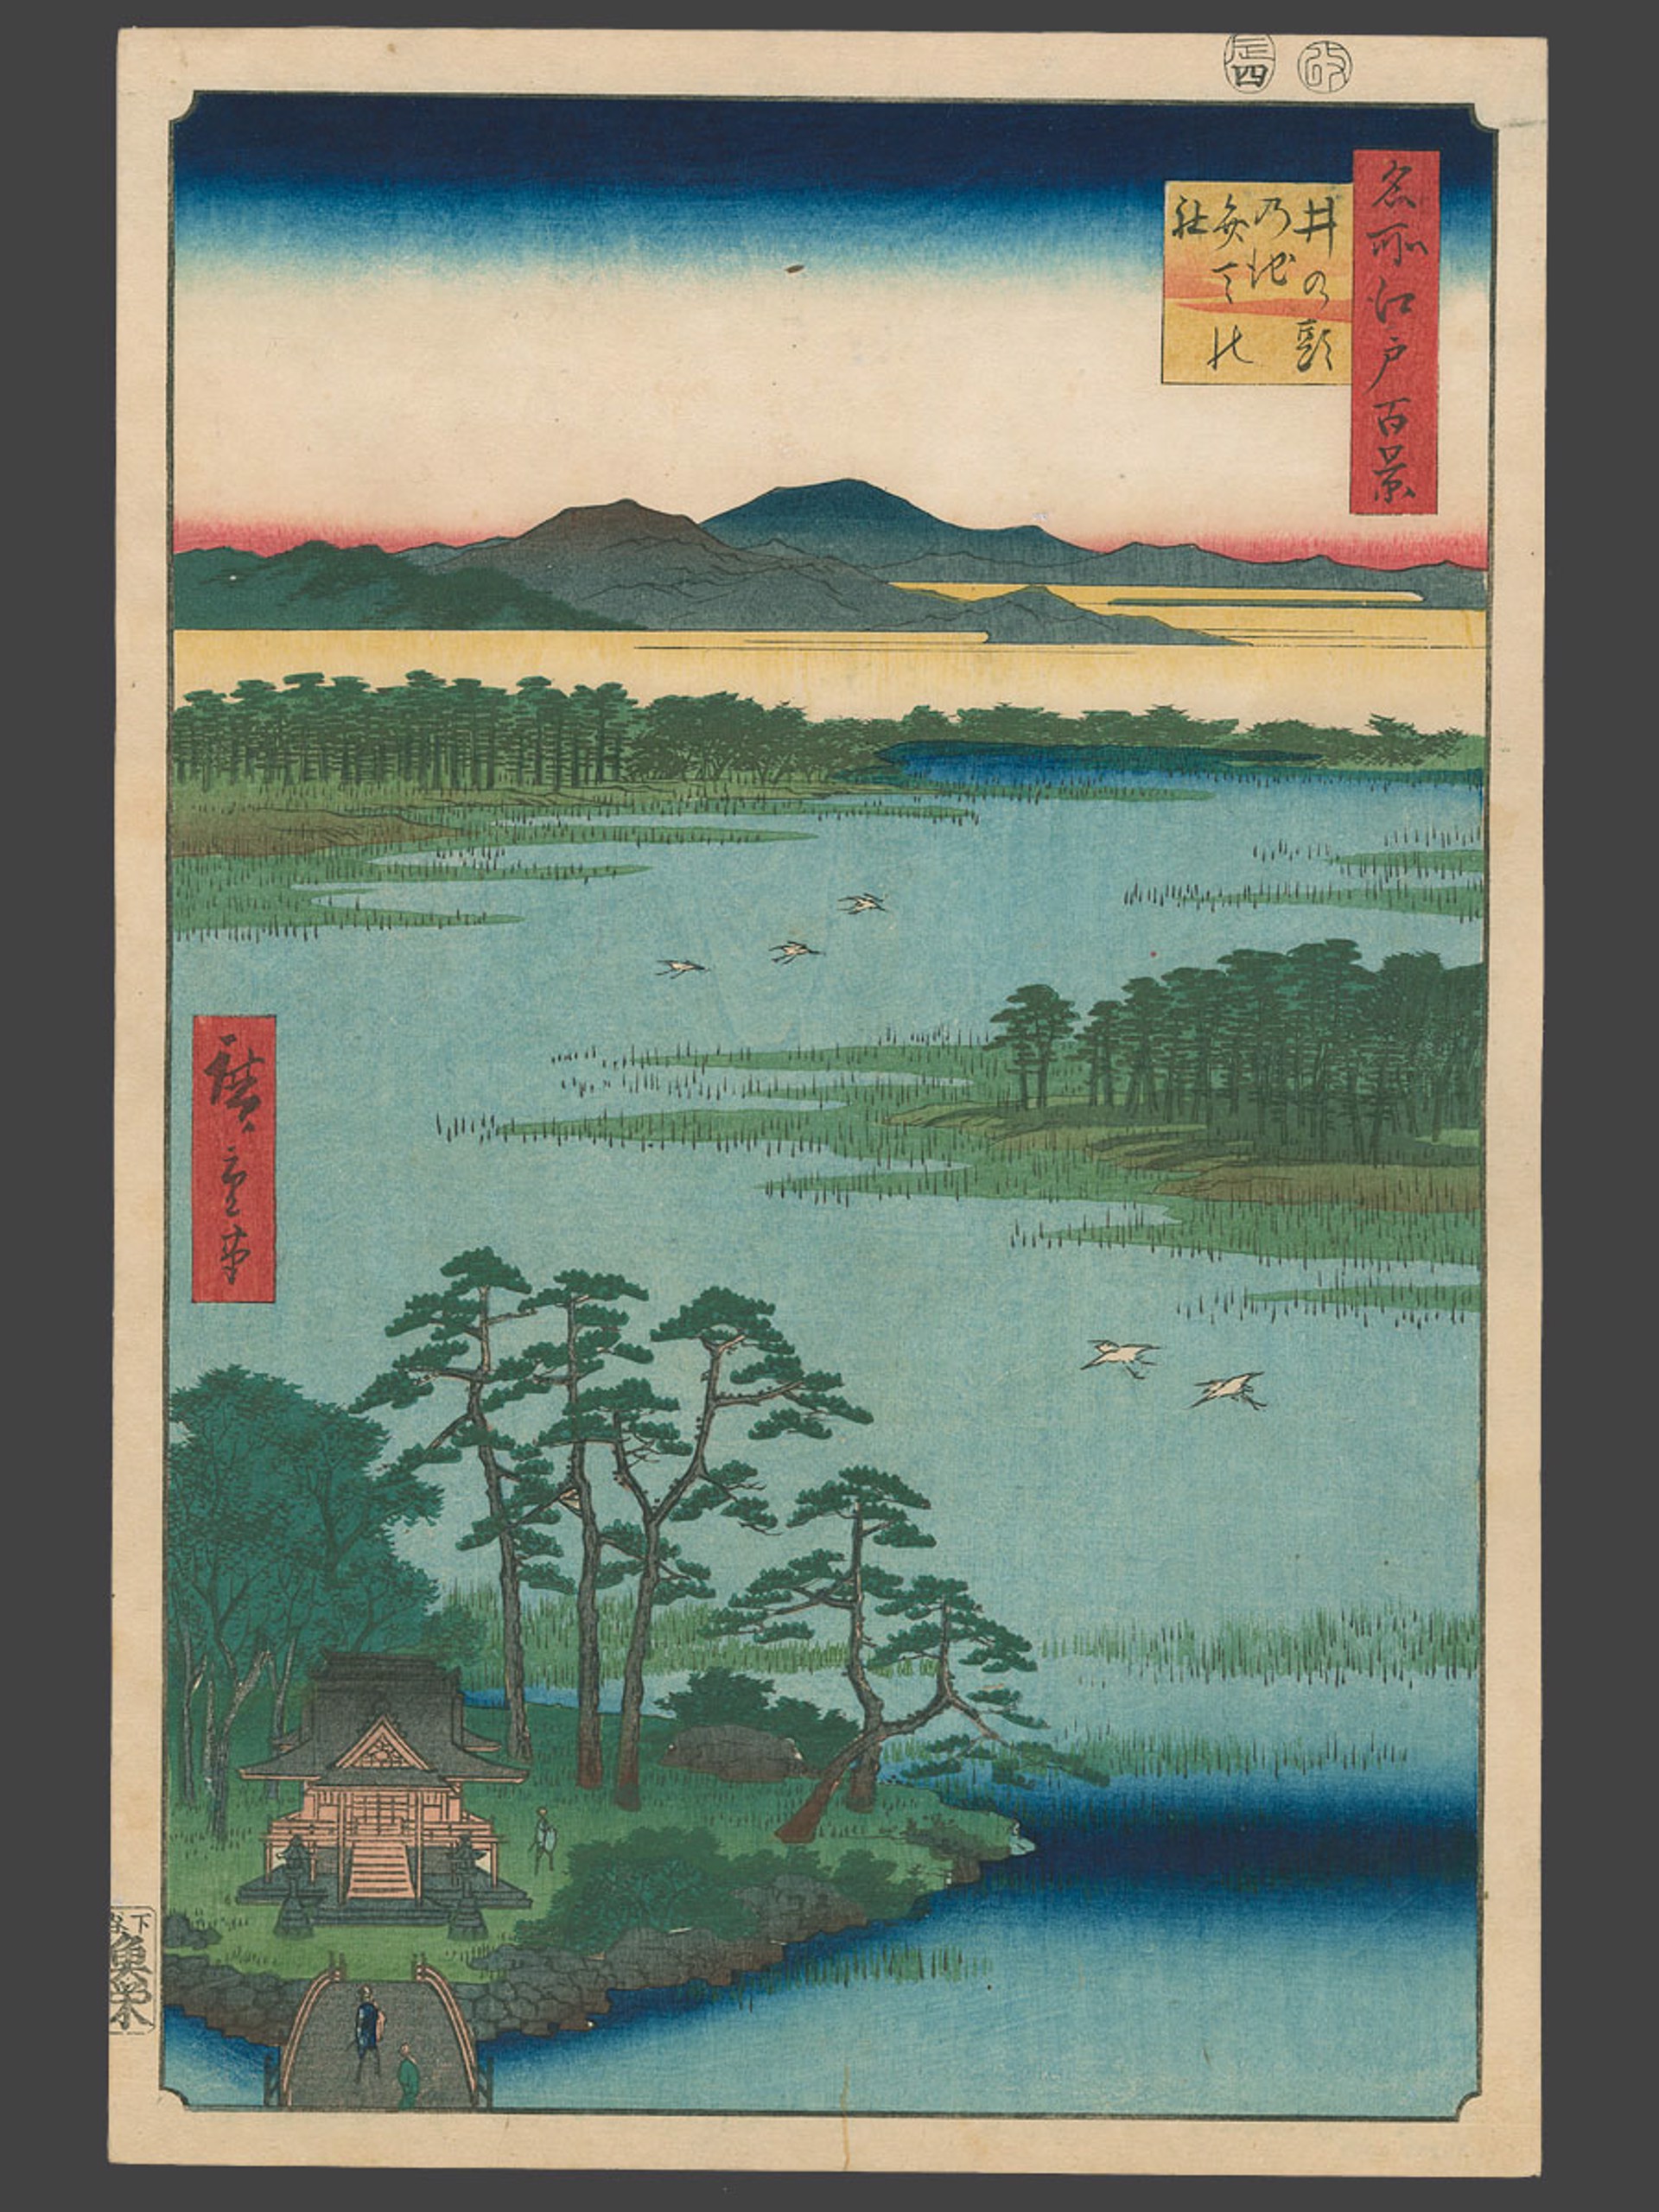 #87 The Benten Shrine, Inogashira Pond 100 Views of Edo by Hiroshige